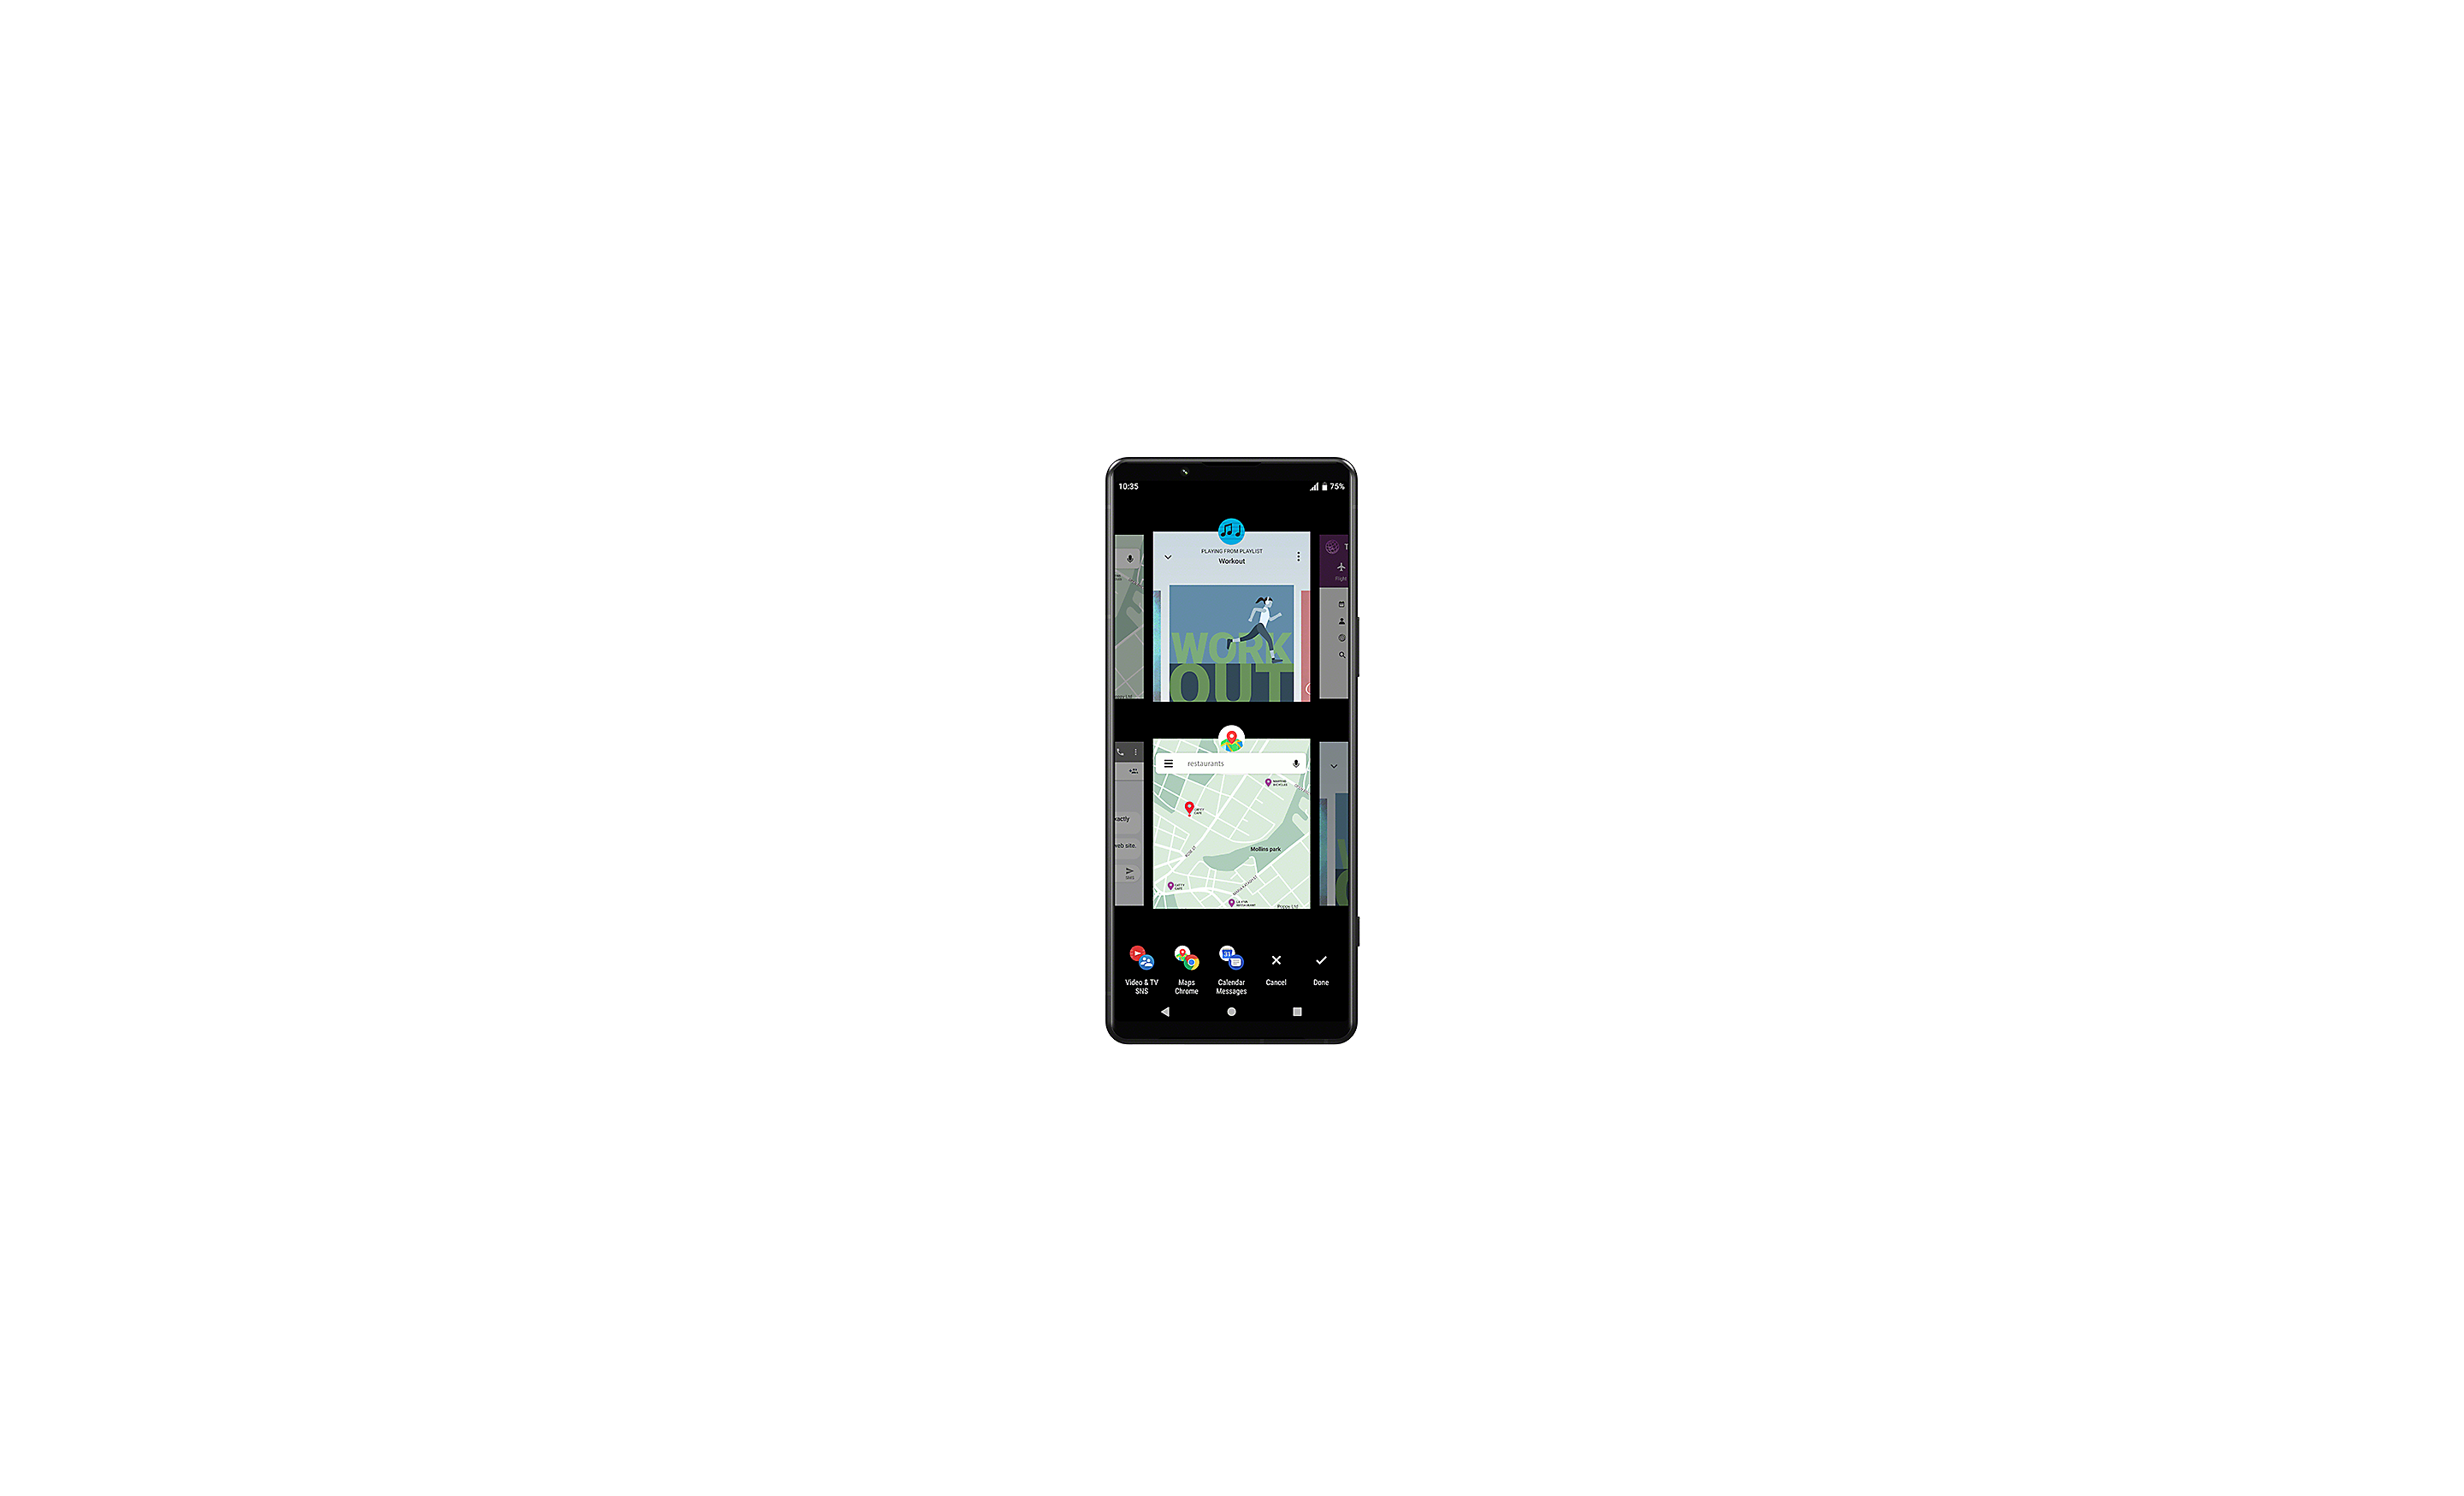 Xperia-smartphone met meerdere vensters en verschillende UI